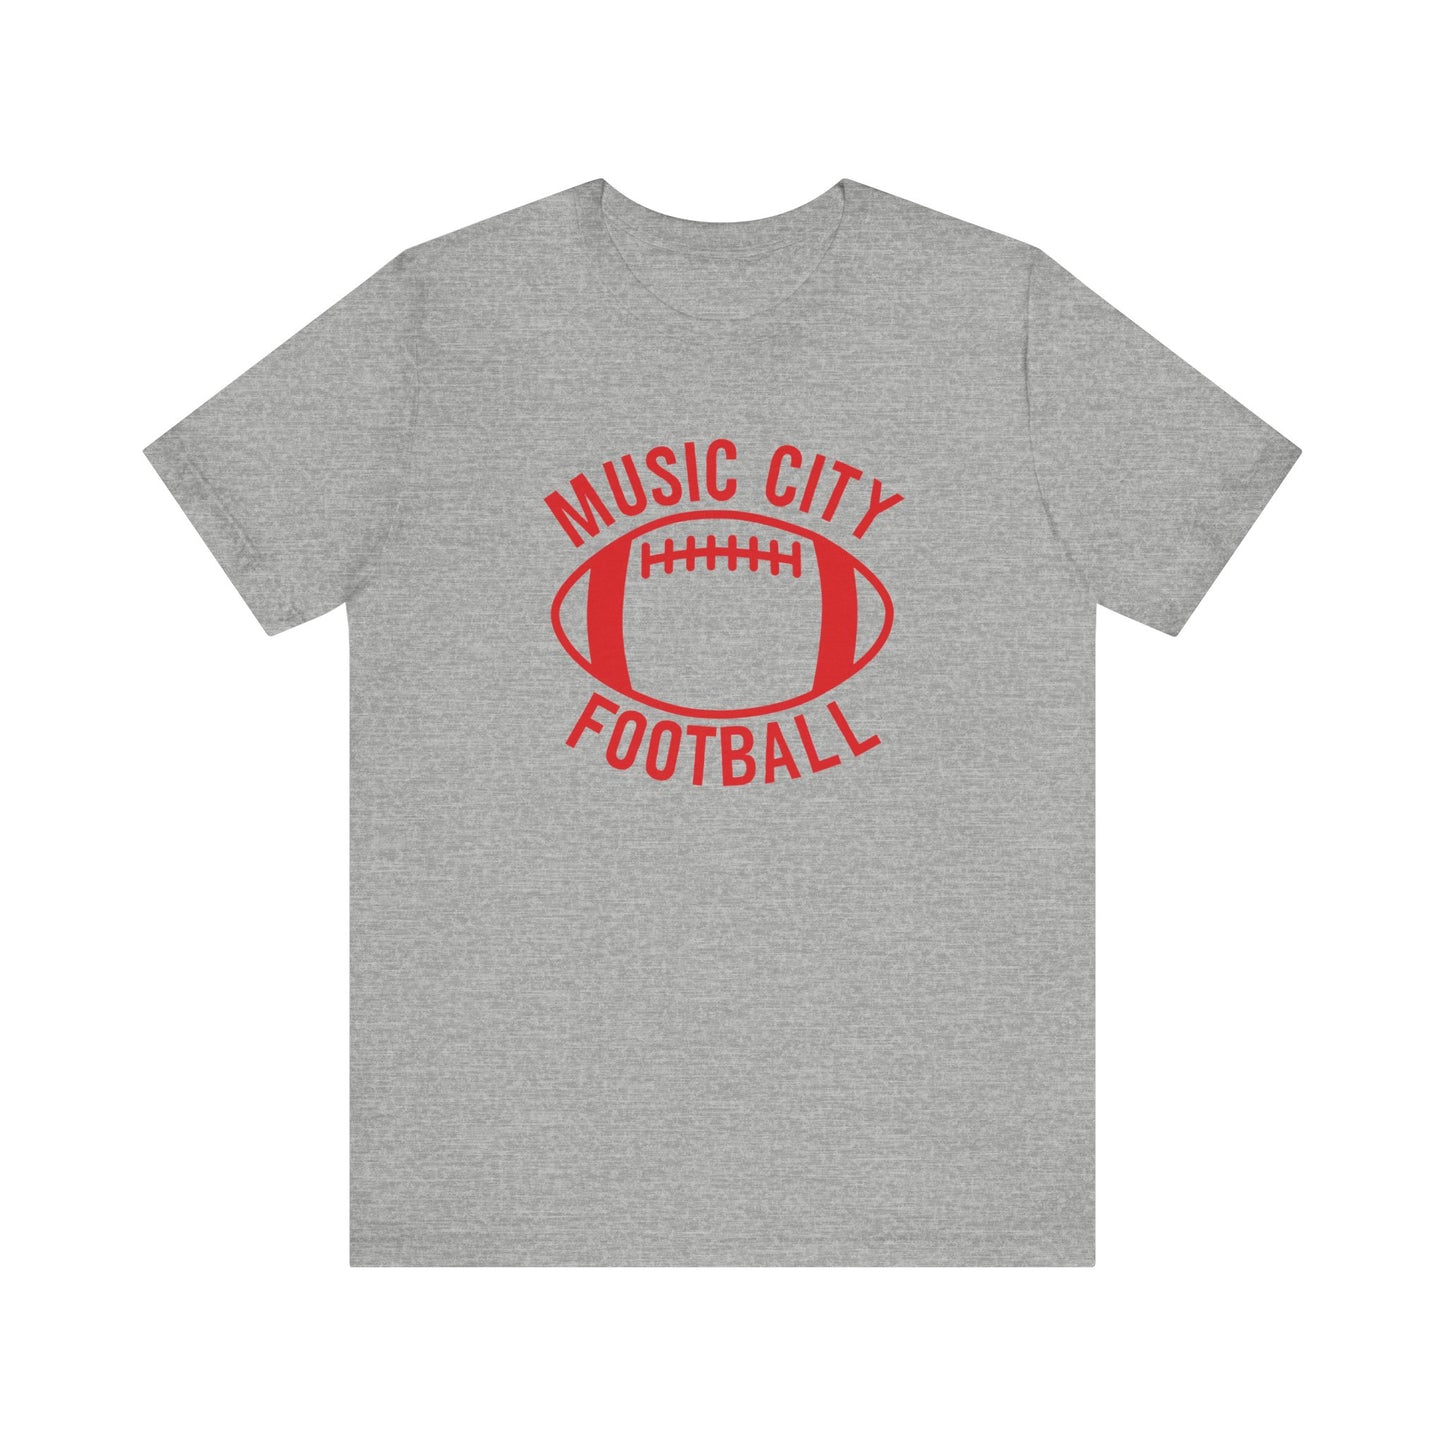 Music City Football Unisex Tee